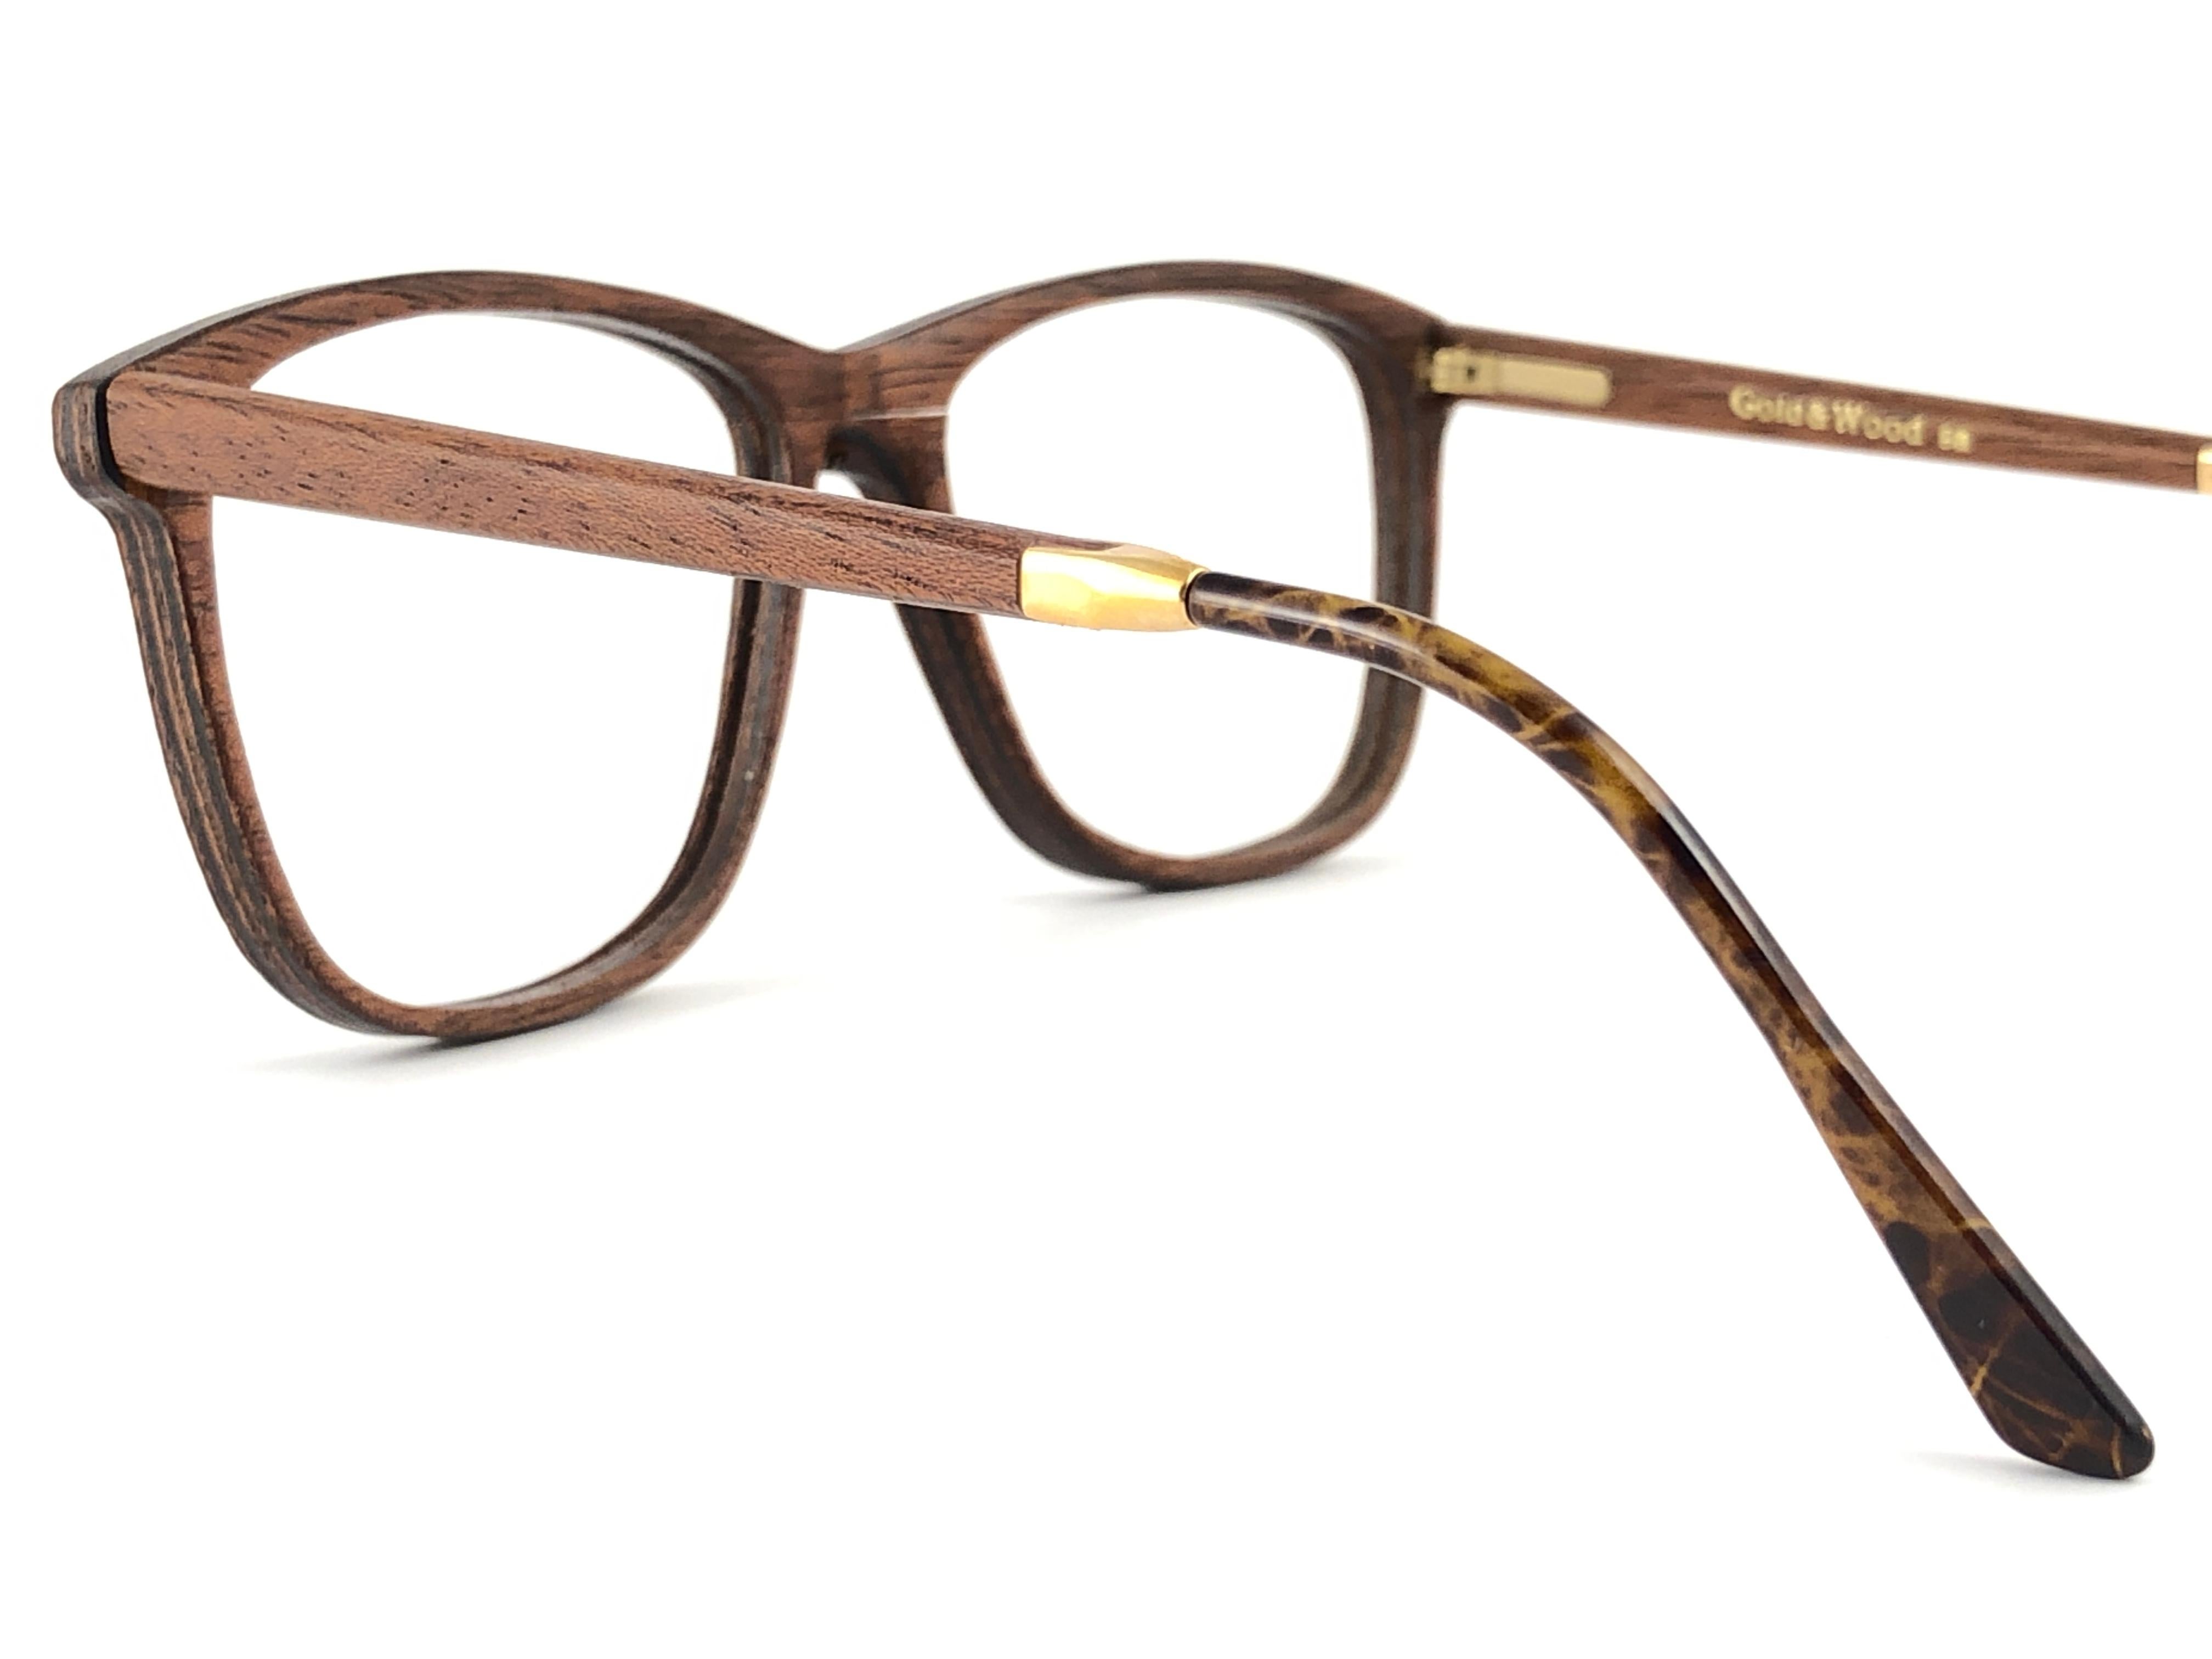 New Vintage Gold & Wood 605051 Genuine RX Glasses 1980's France For Sale 4